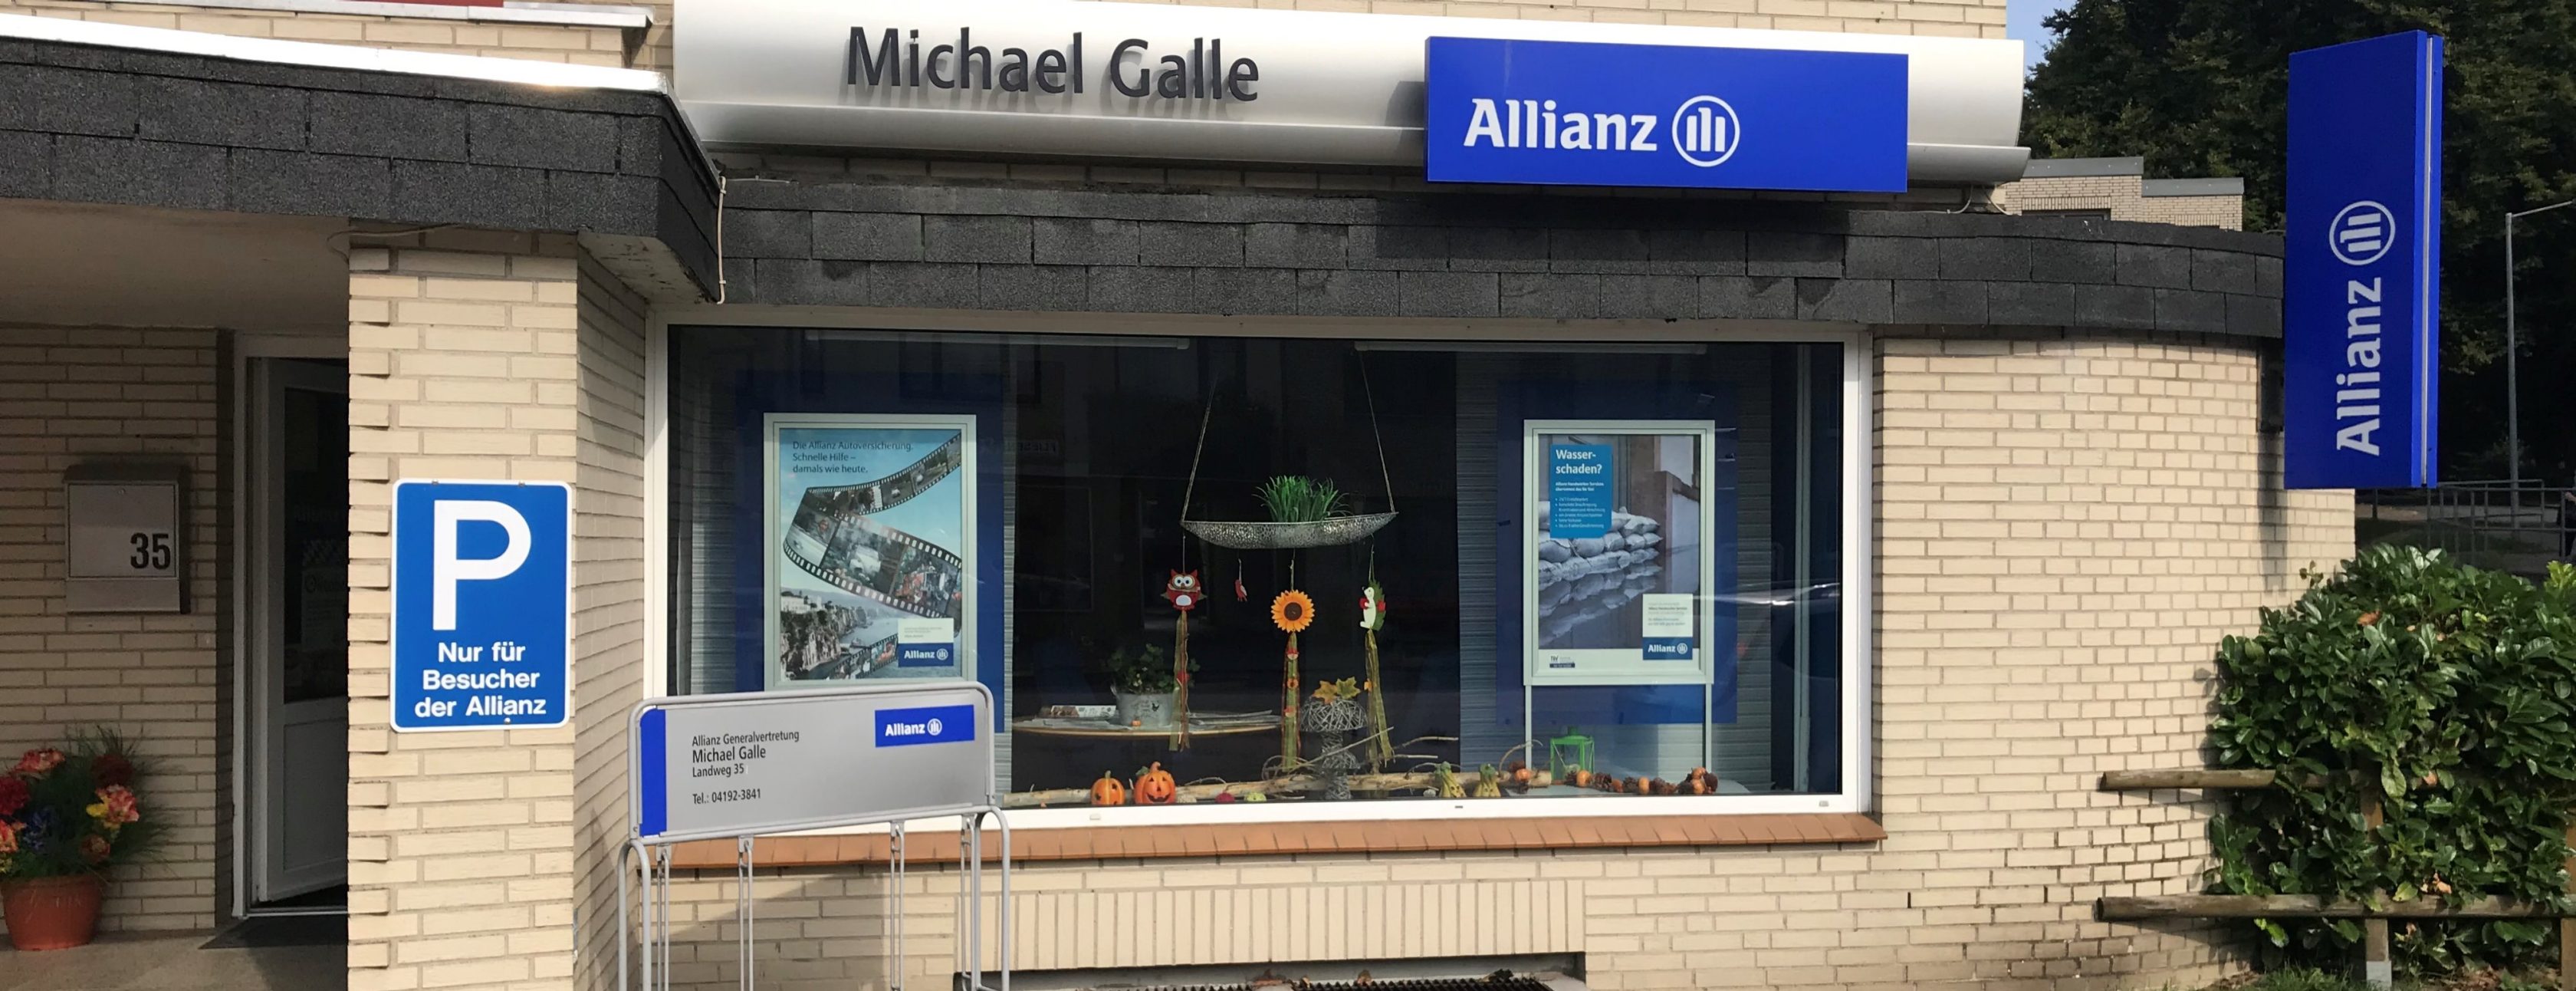 Allianz Versicherung Michael Galle Bad Bramstedt - Allianz Bad Bramstedt